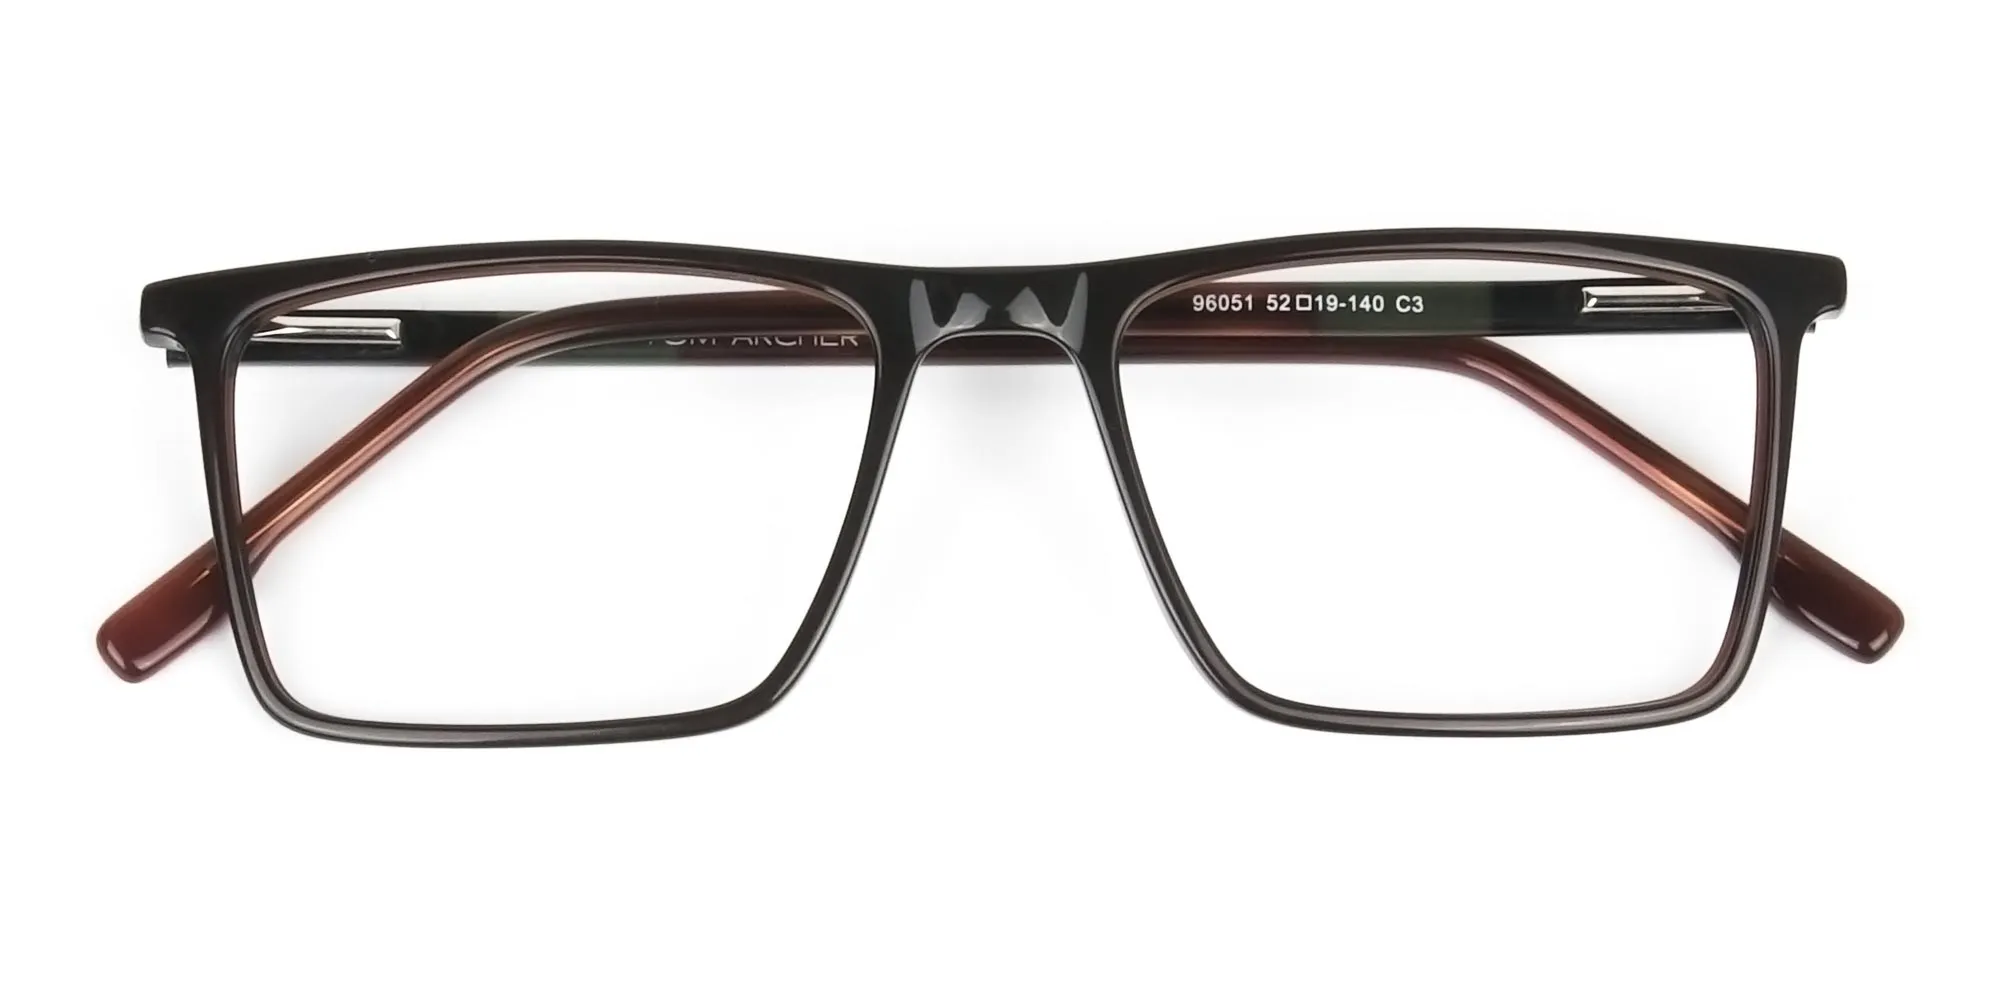 Dark Brown Rectangular Glasses - 2